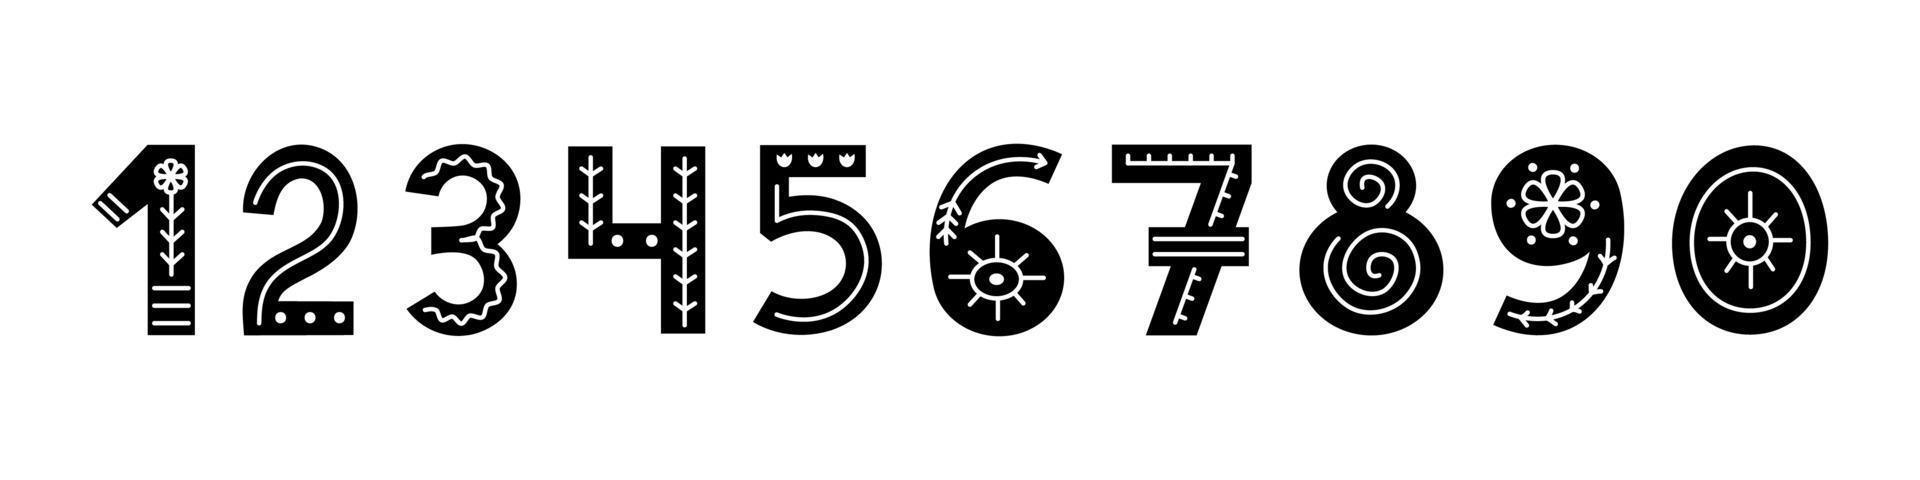 Skandinavisch verzierte Schwarz-Weiß-Zahlen mit Blumen und Linien. Volksschrift mit Zahlen. schrift im skandinavischen stil. vektor